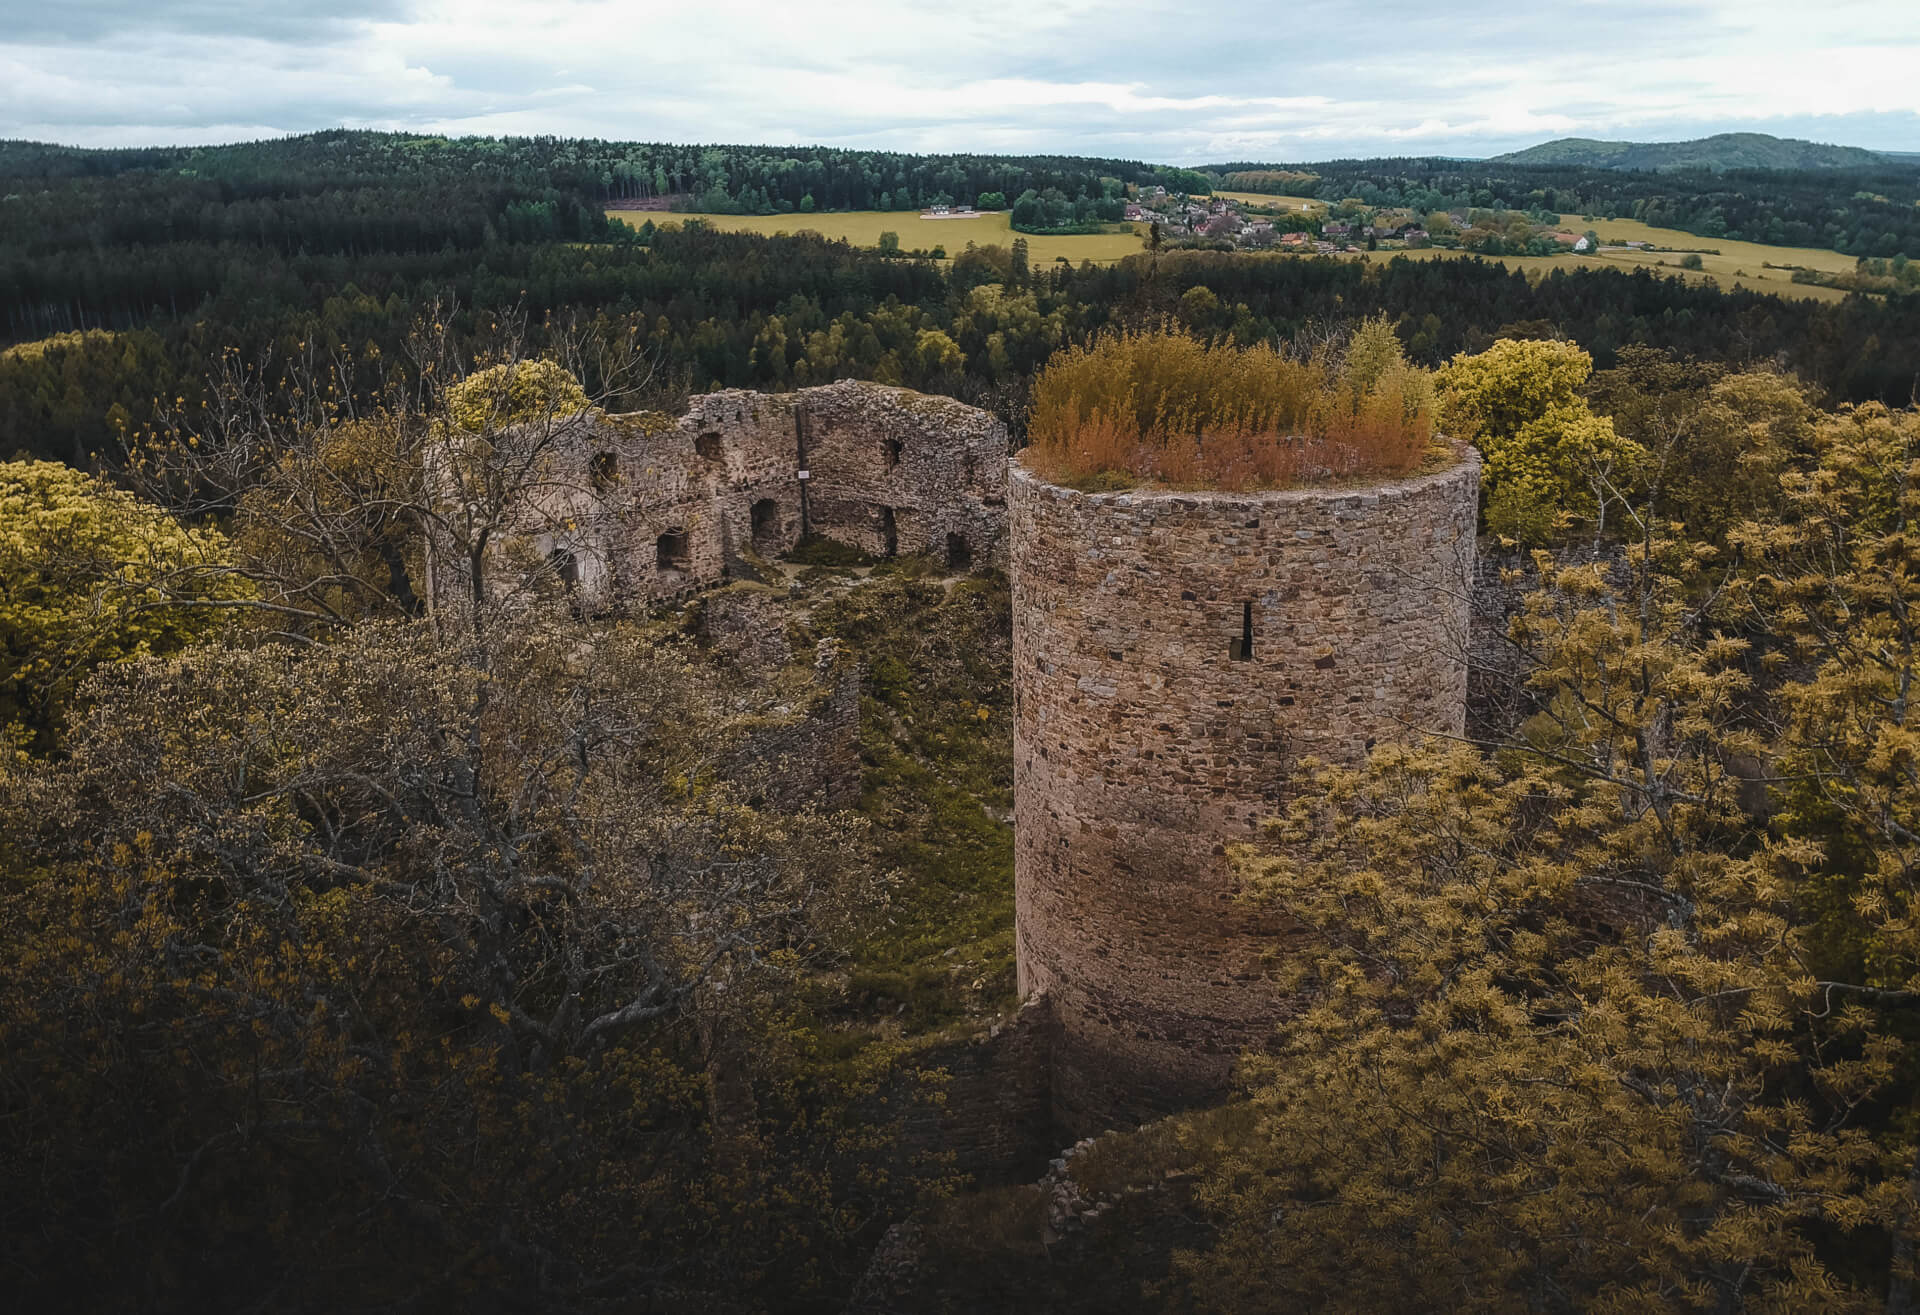 Bergfrit a zbytky paláce hradu Valdek na podzim